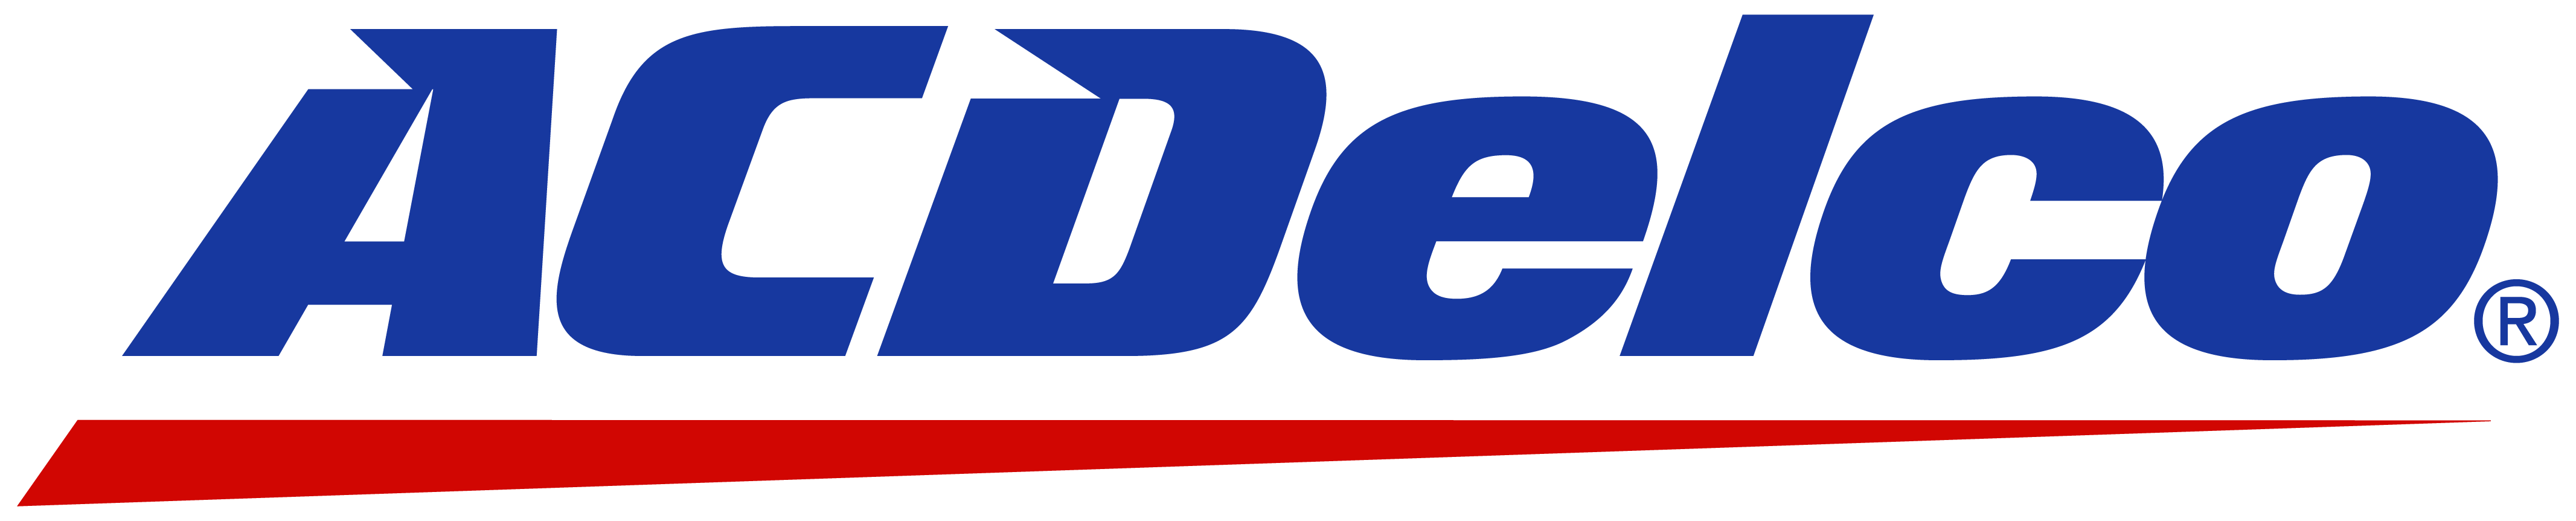 ACDelco_logo